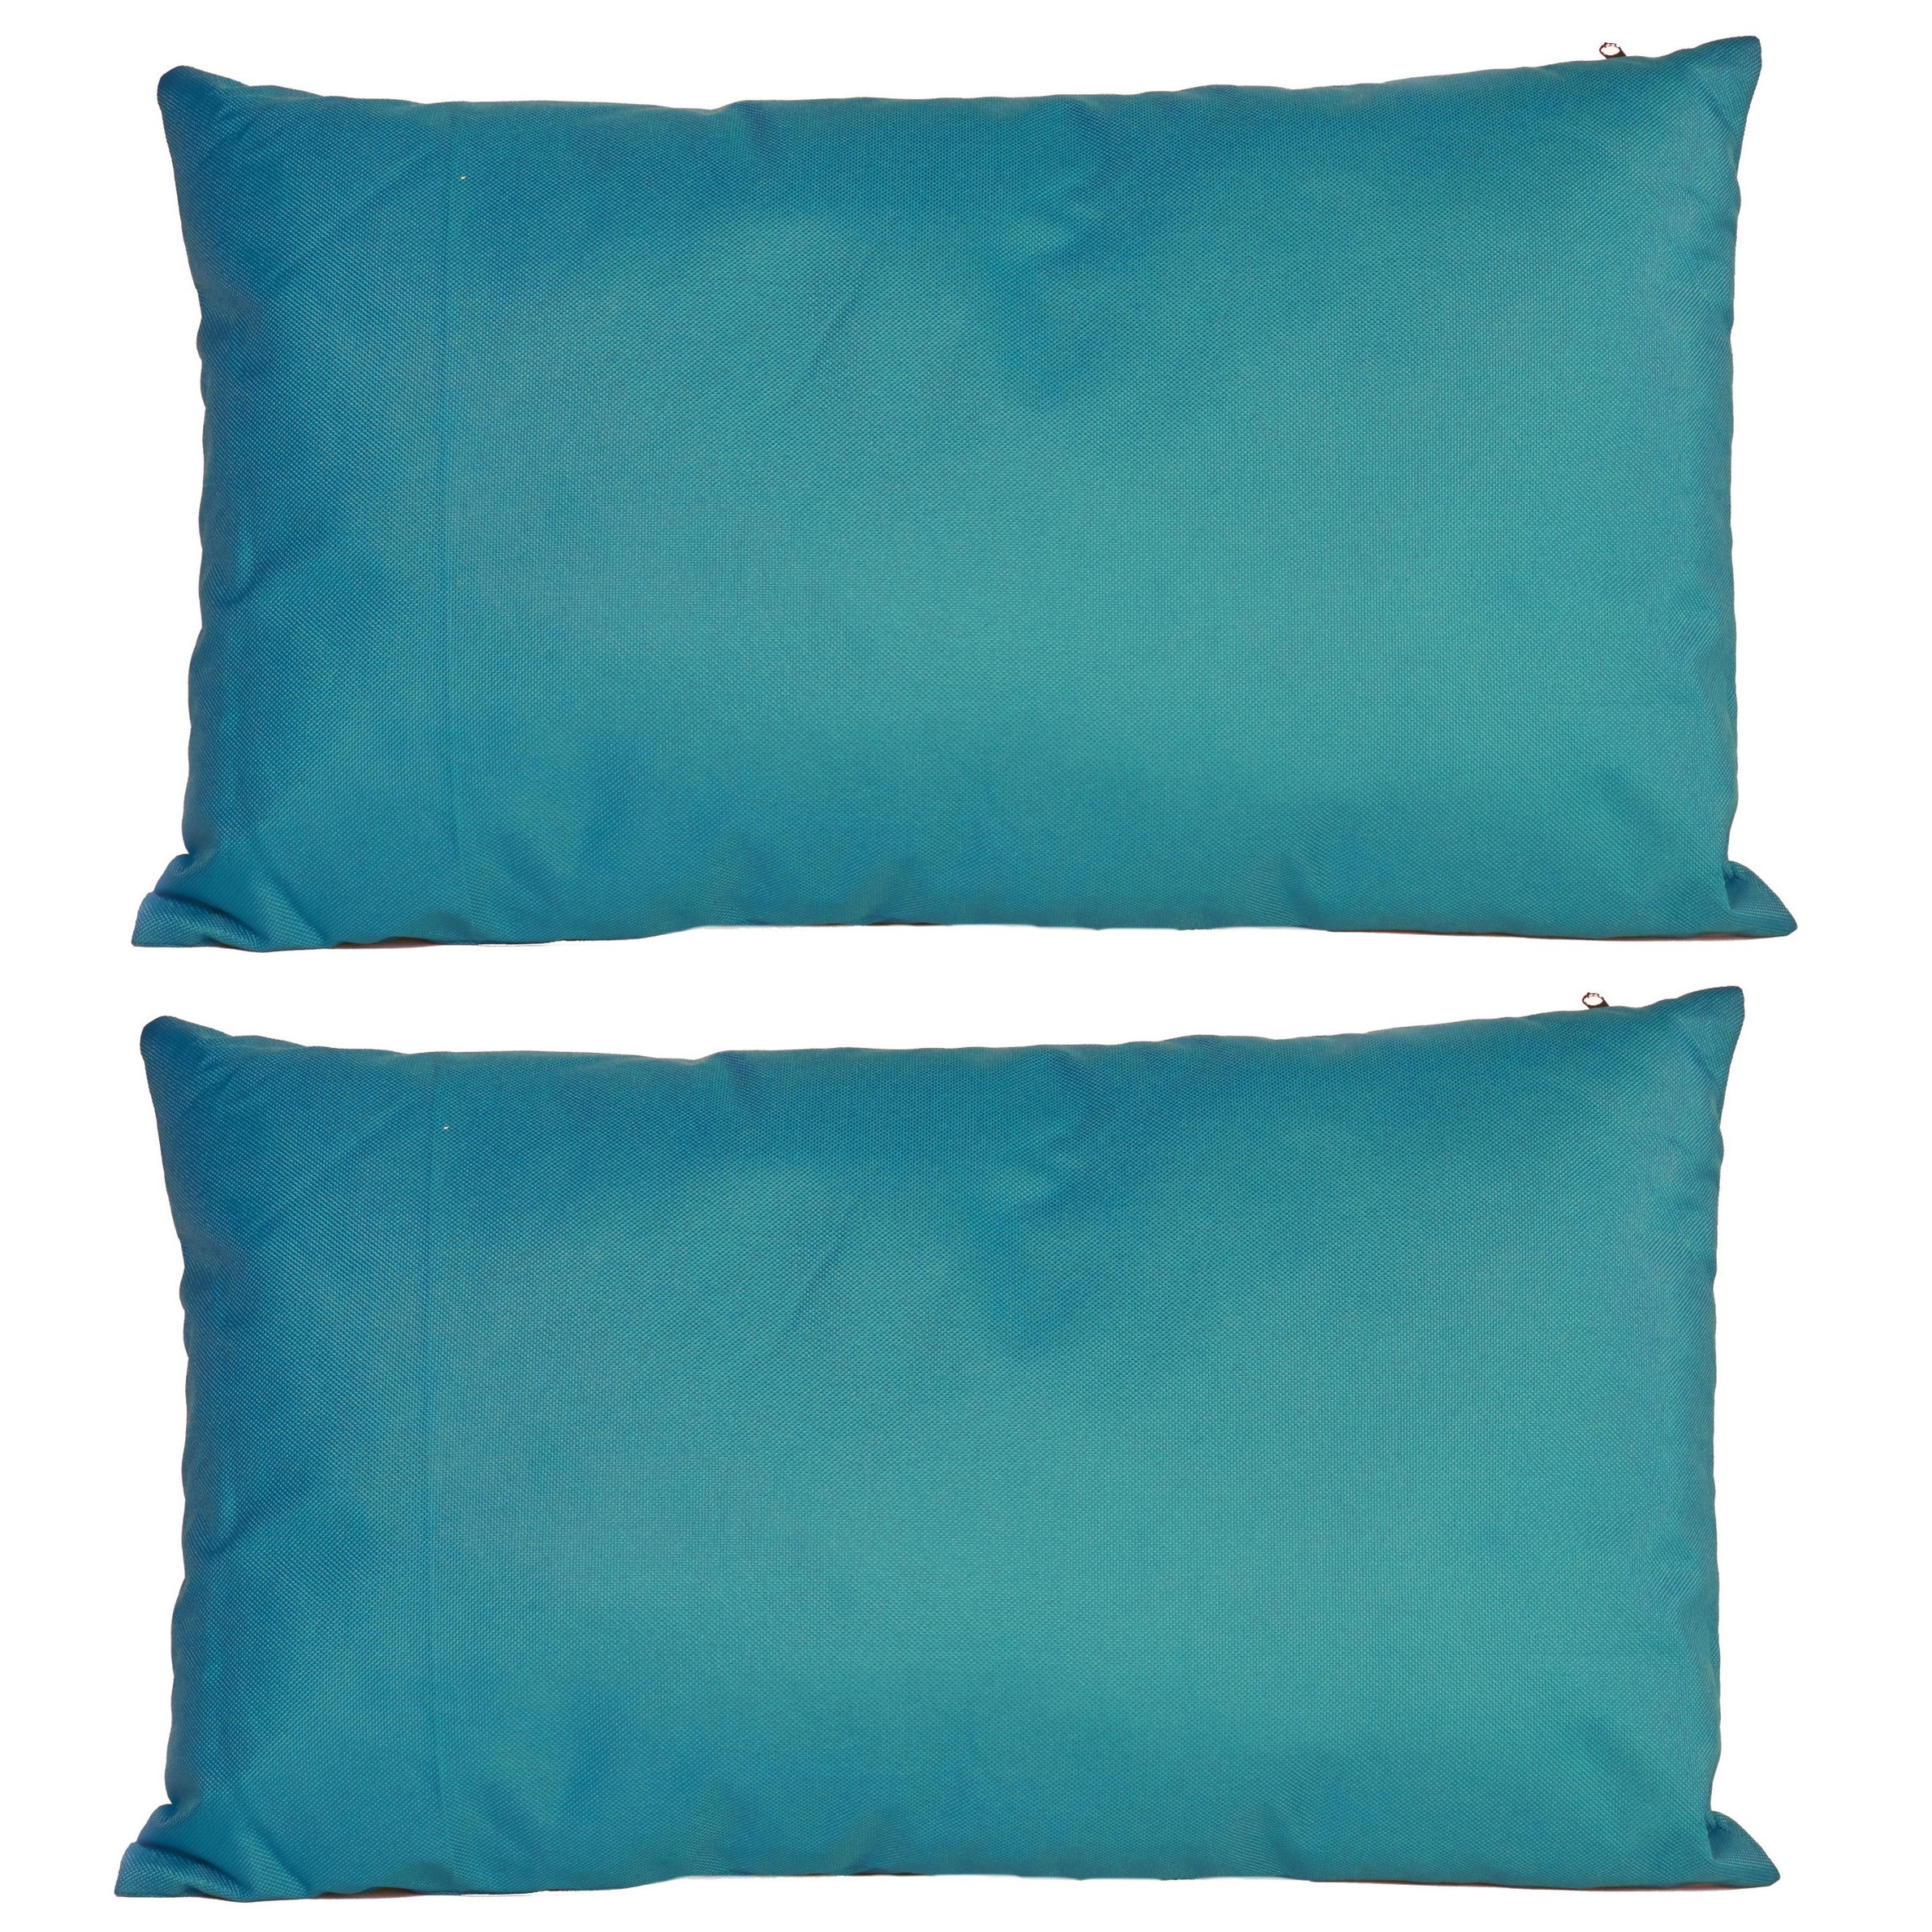 2x Bank-sier kussens voor binnen en buiten in de kleur petrol blauw 30 x 50 cm